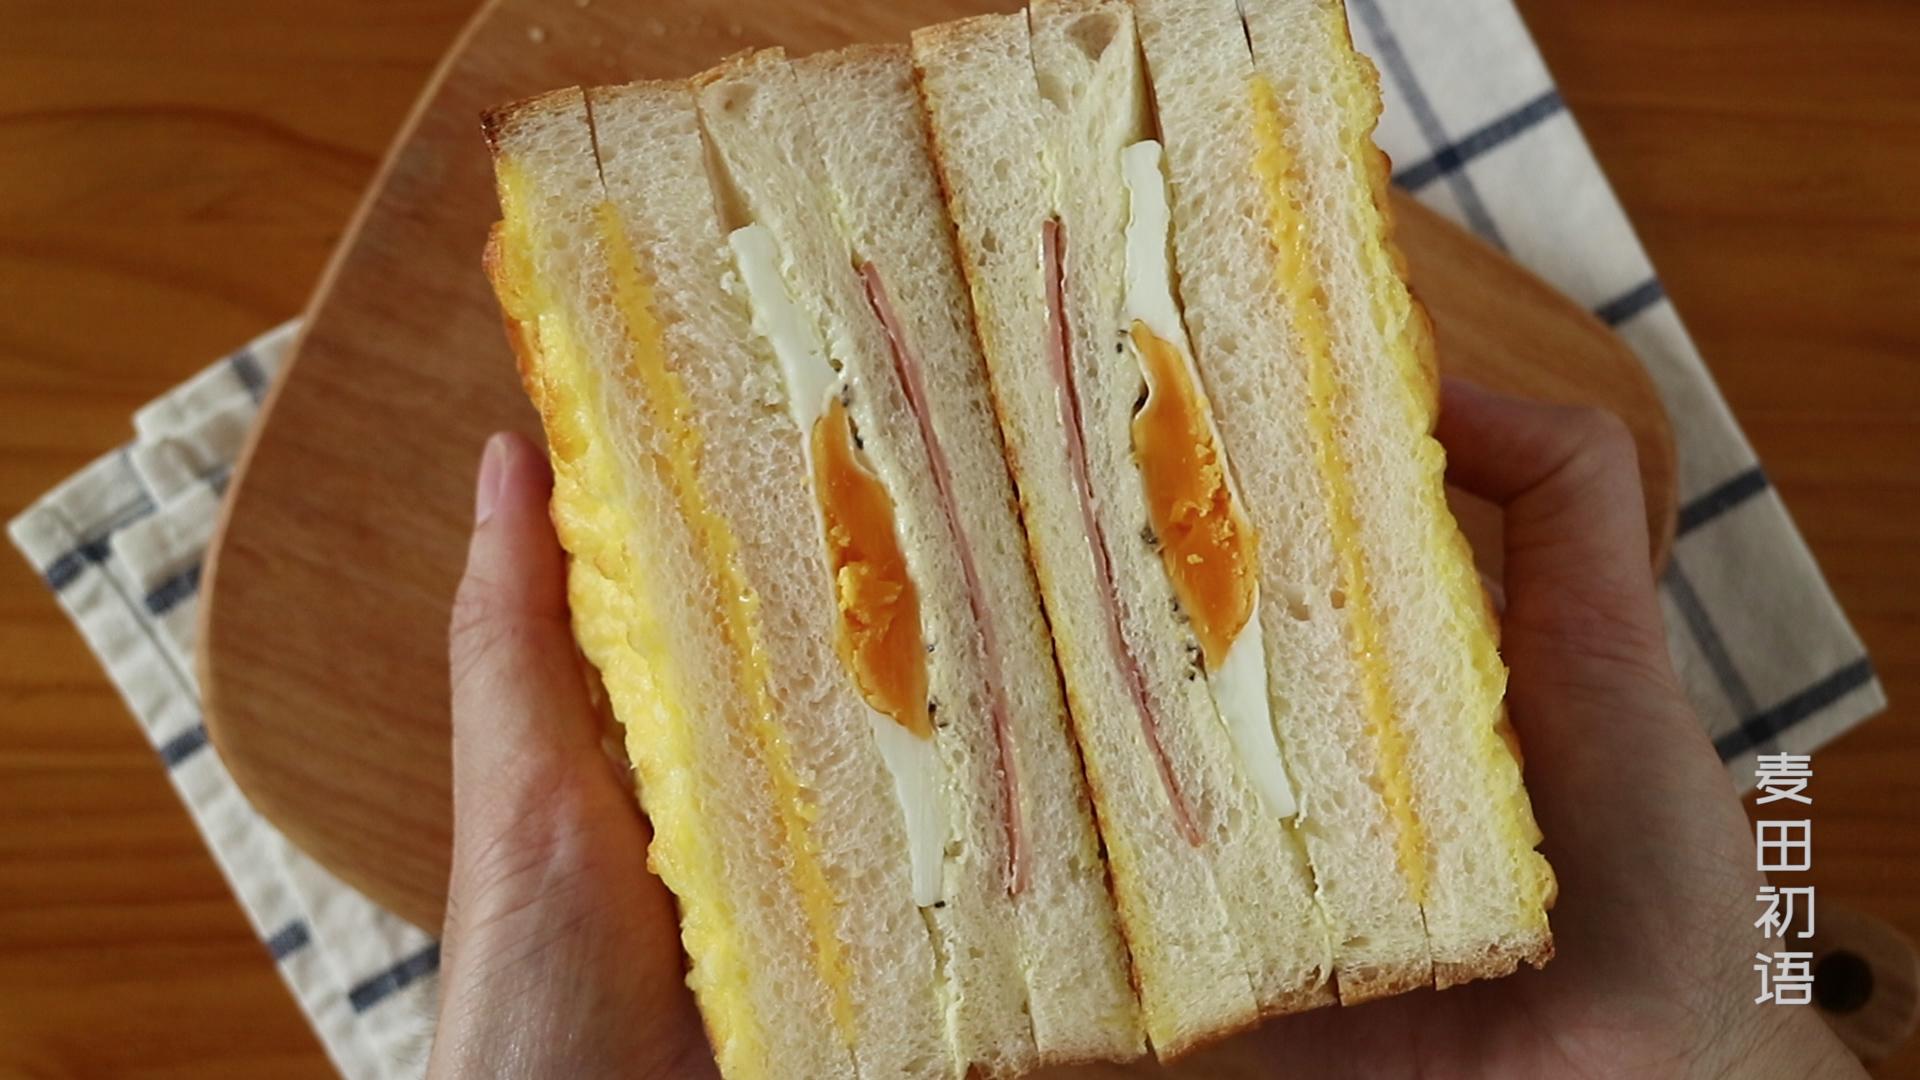 万物皆可夹的三明治，我选择了最经典的做法